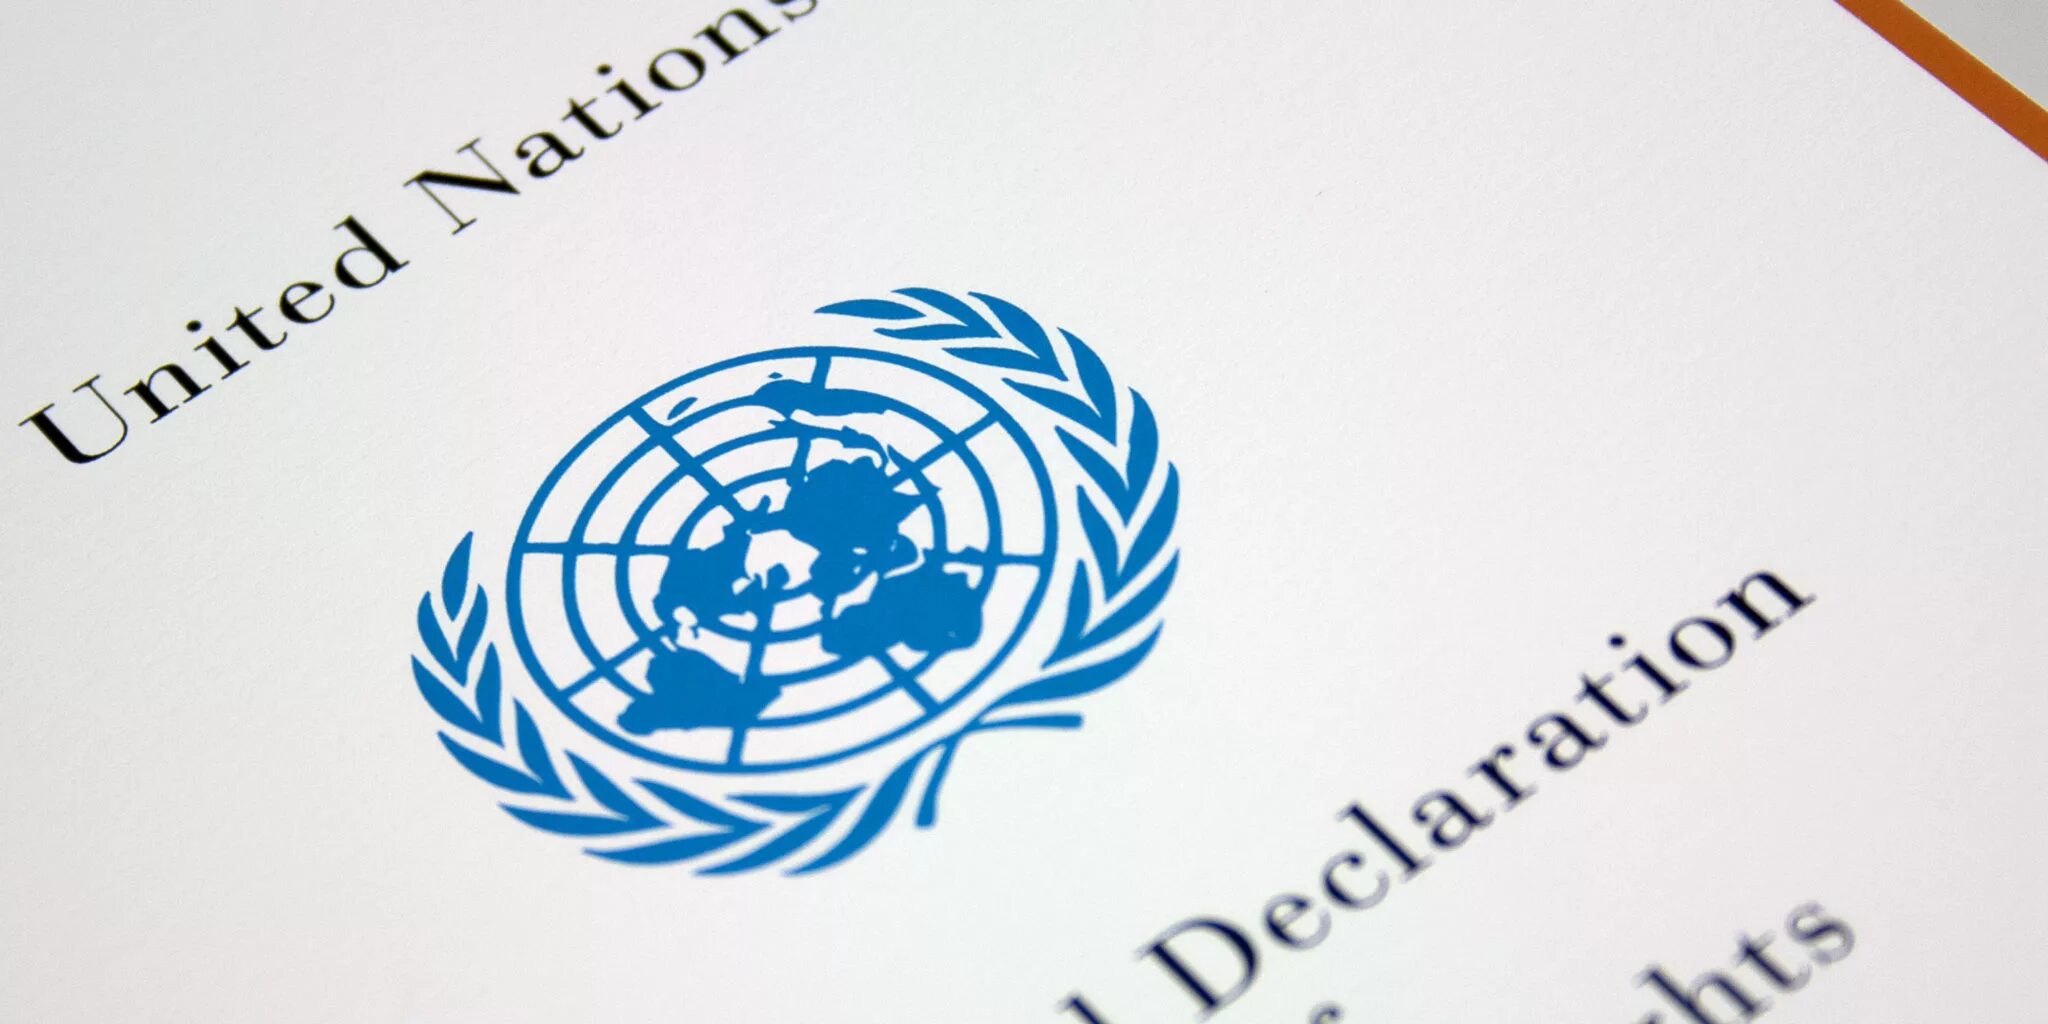 Документ между странами. Декларация ООН. Генеральная Ассамблея ООН 1970.